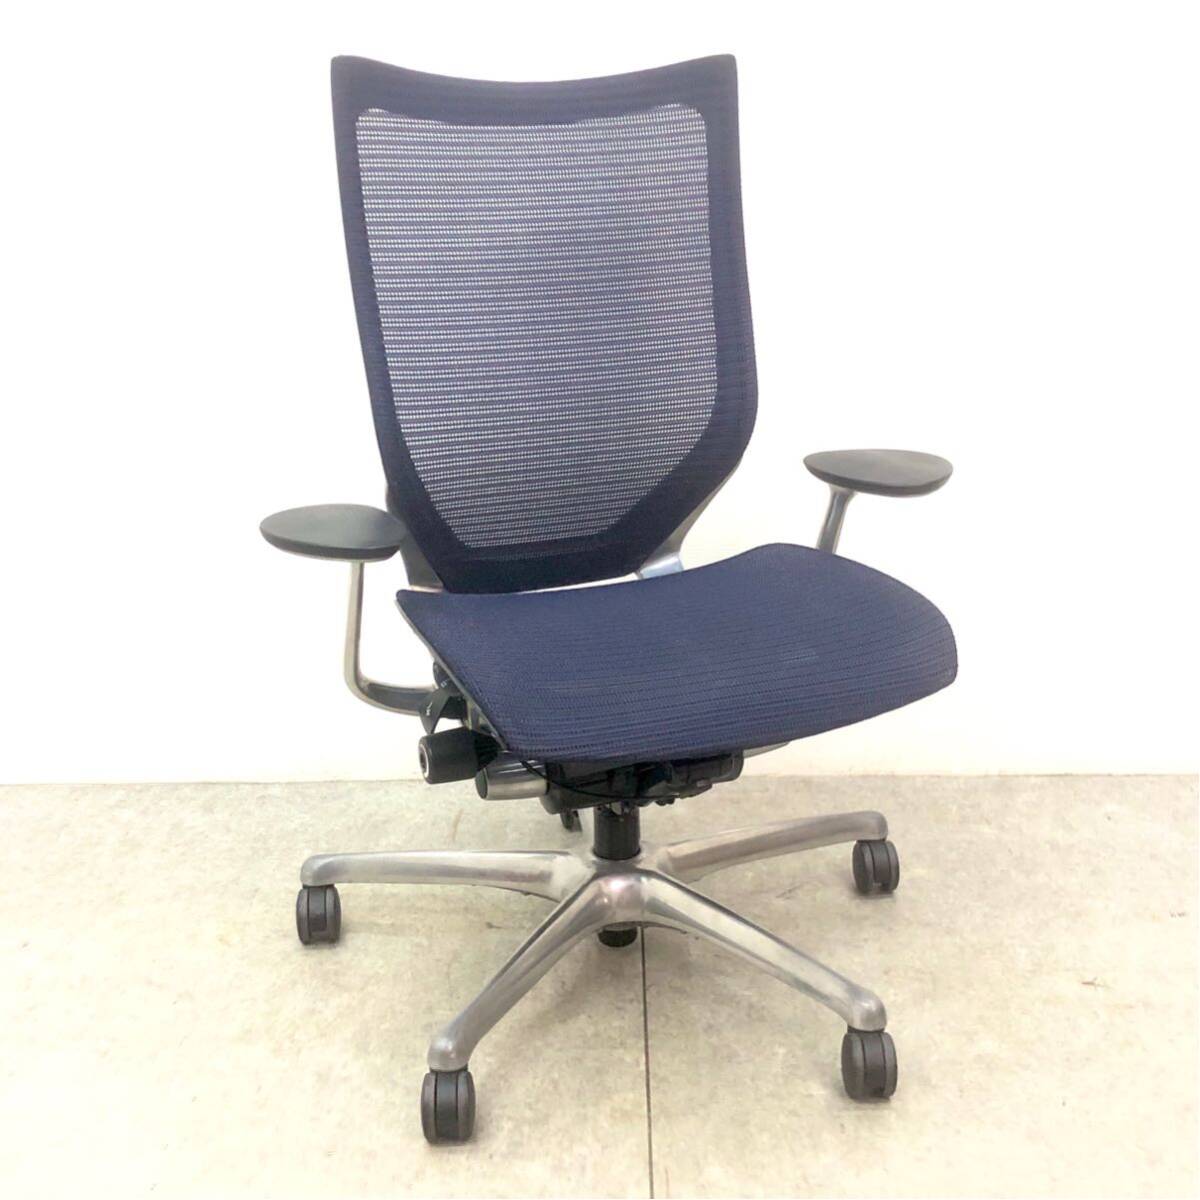 □ Okamura OKAMURA Atlas Офисный стул Настольный стул CP25AR-FDH4 Синий синий стул Стул с откидной спинкой Фиксированный □24031803